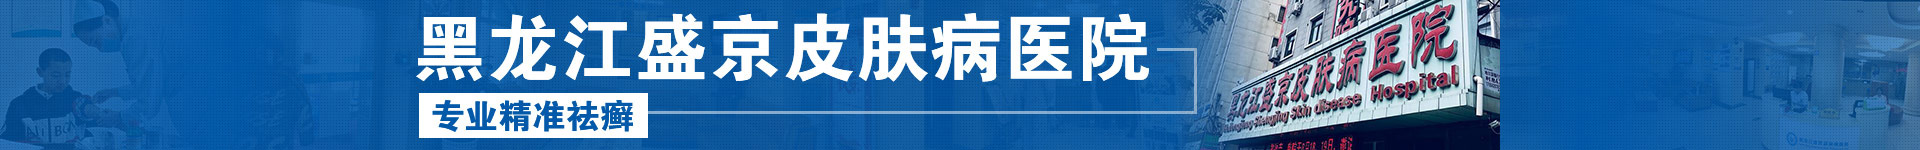 黑龙江盛京银屑病医院logo